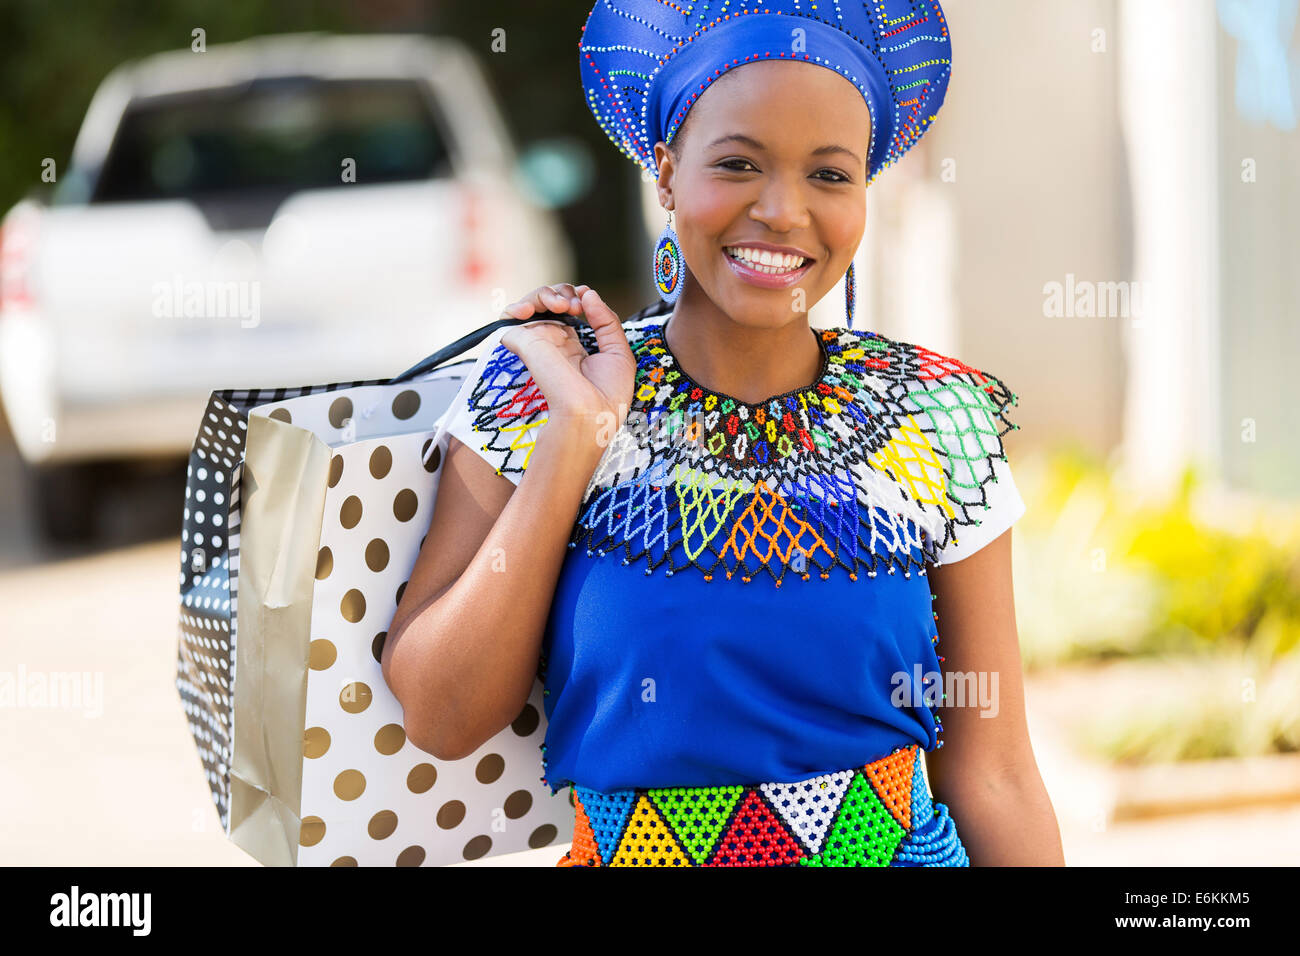 Alegre señorita africana en shopping mall Foto de stock